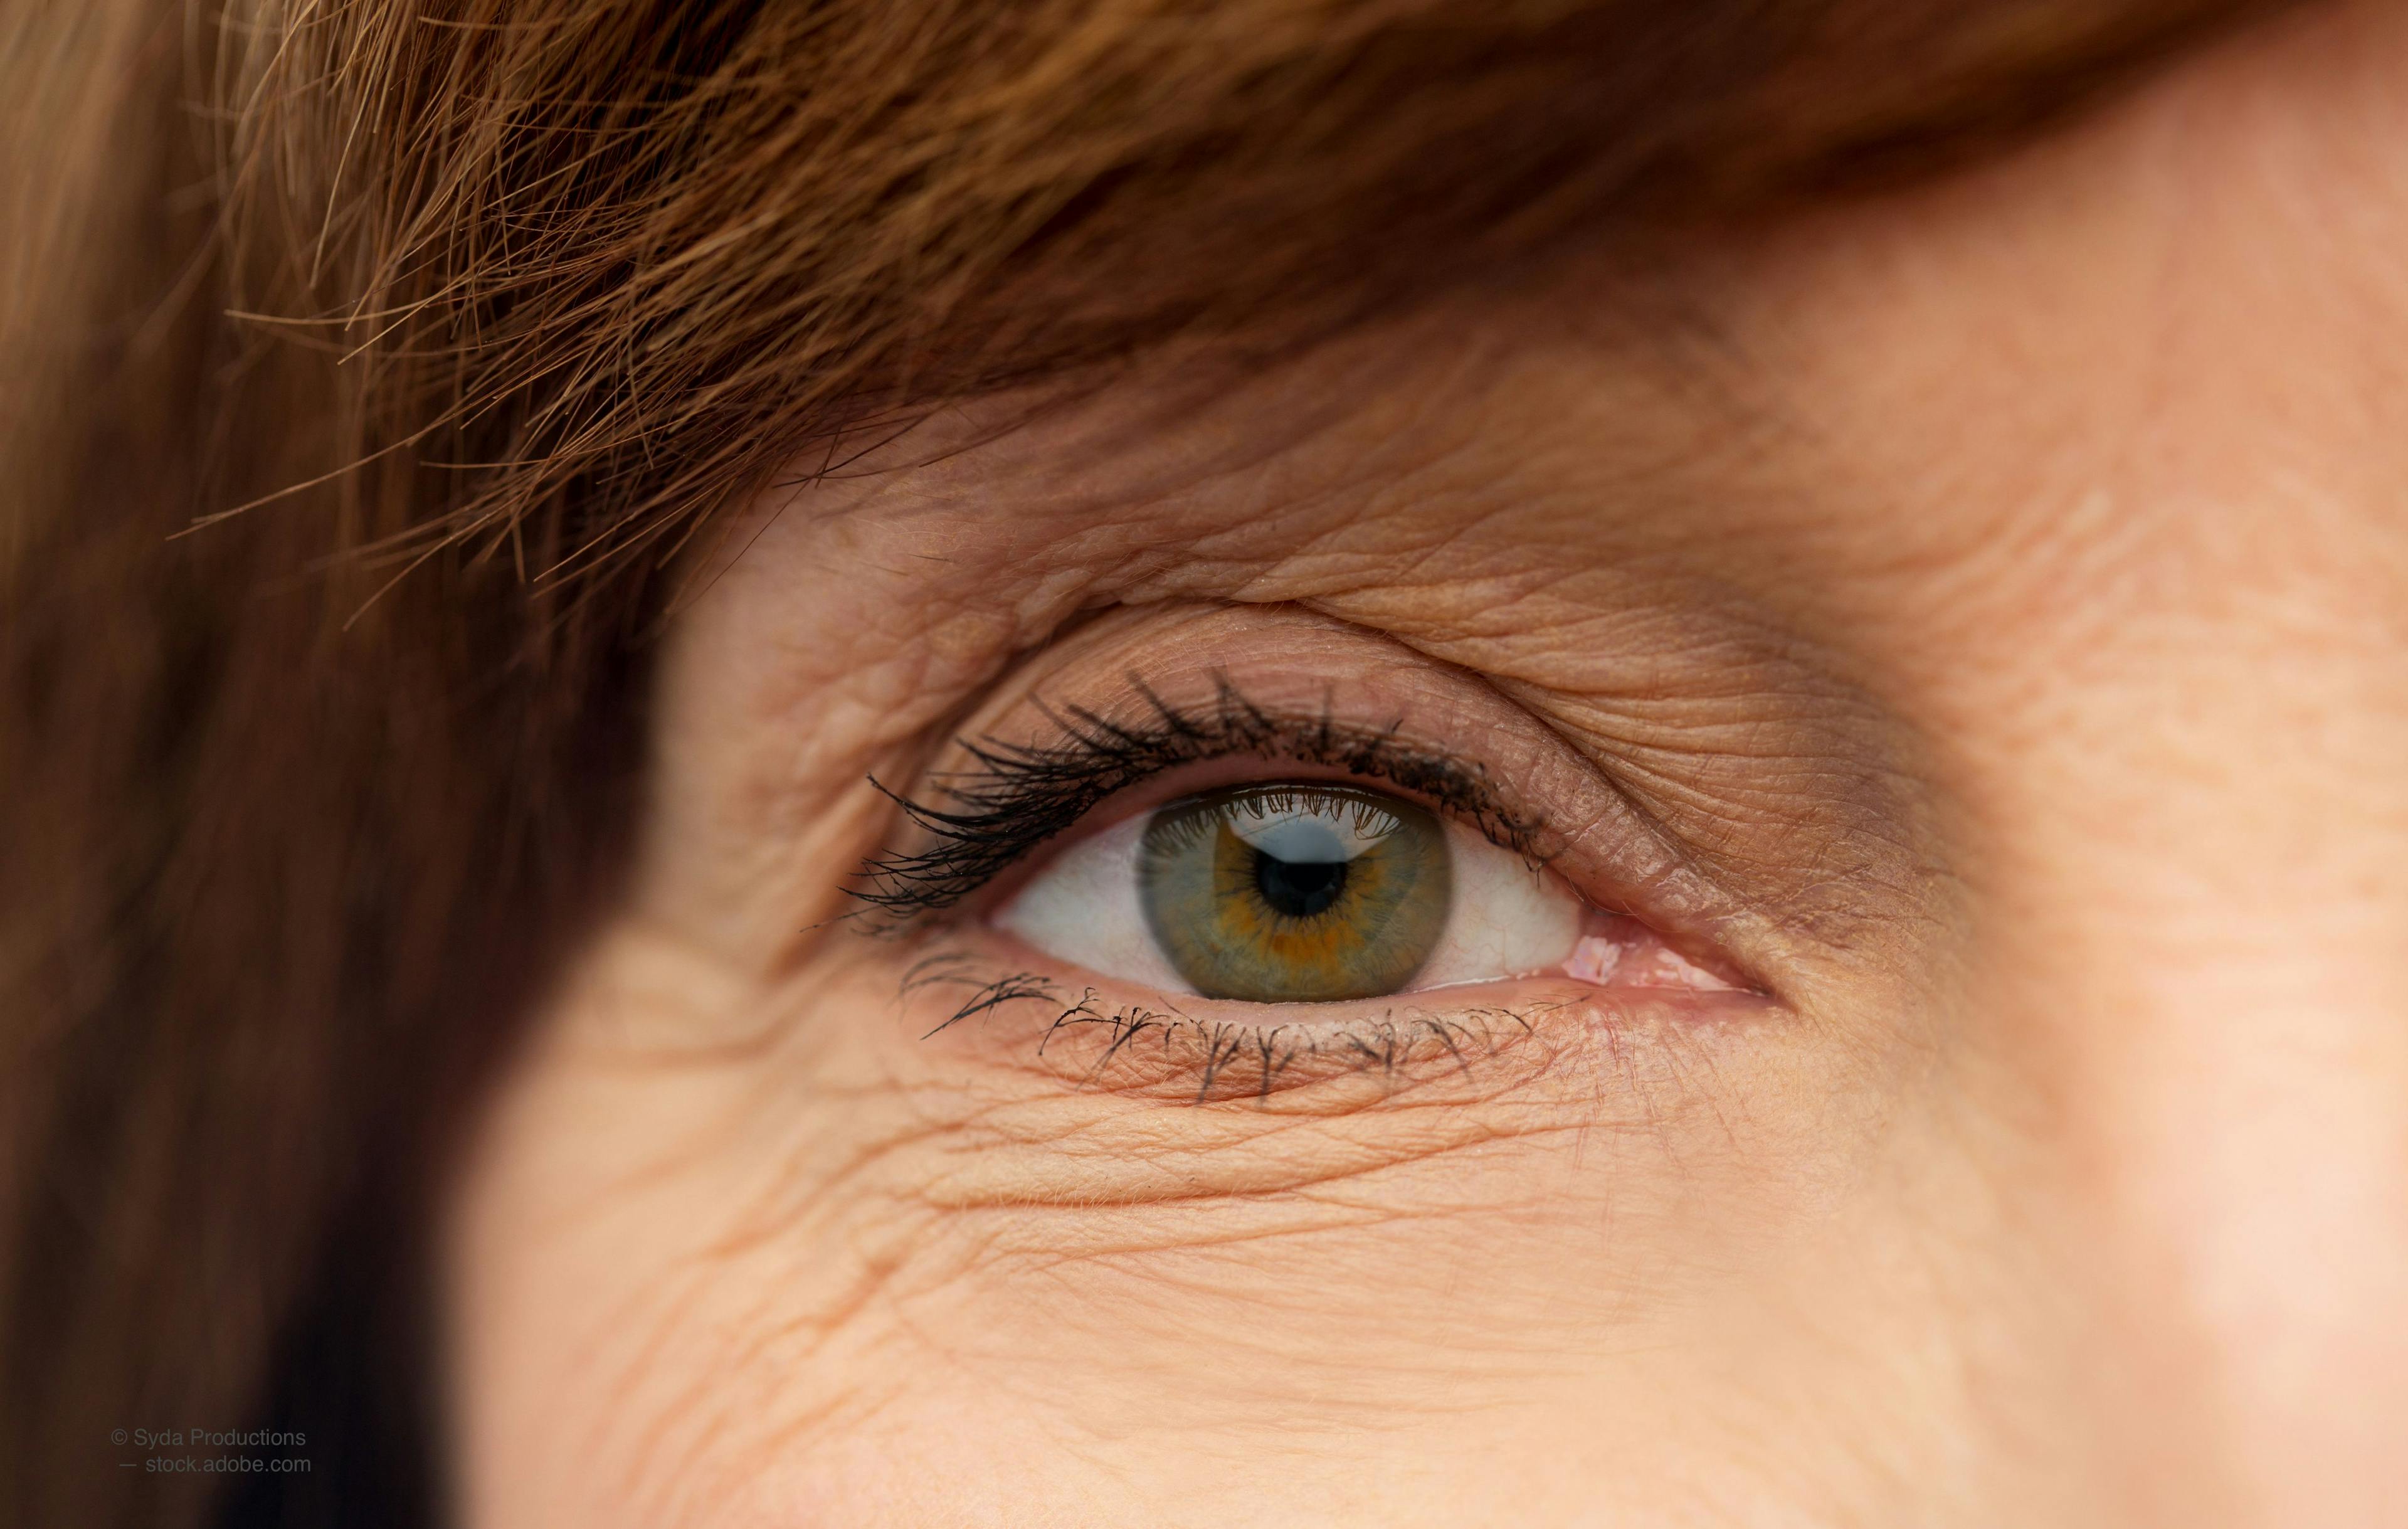 Study targets dry eye disease in postmenopausal women